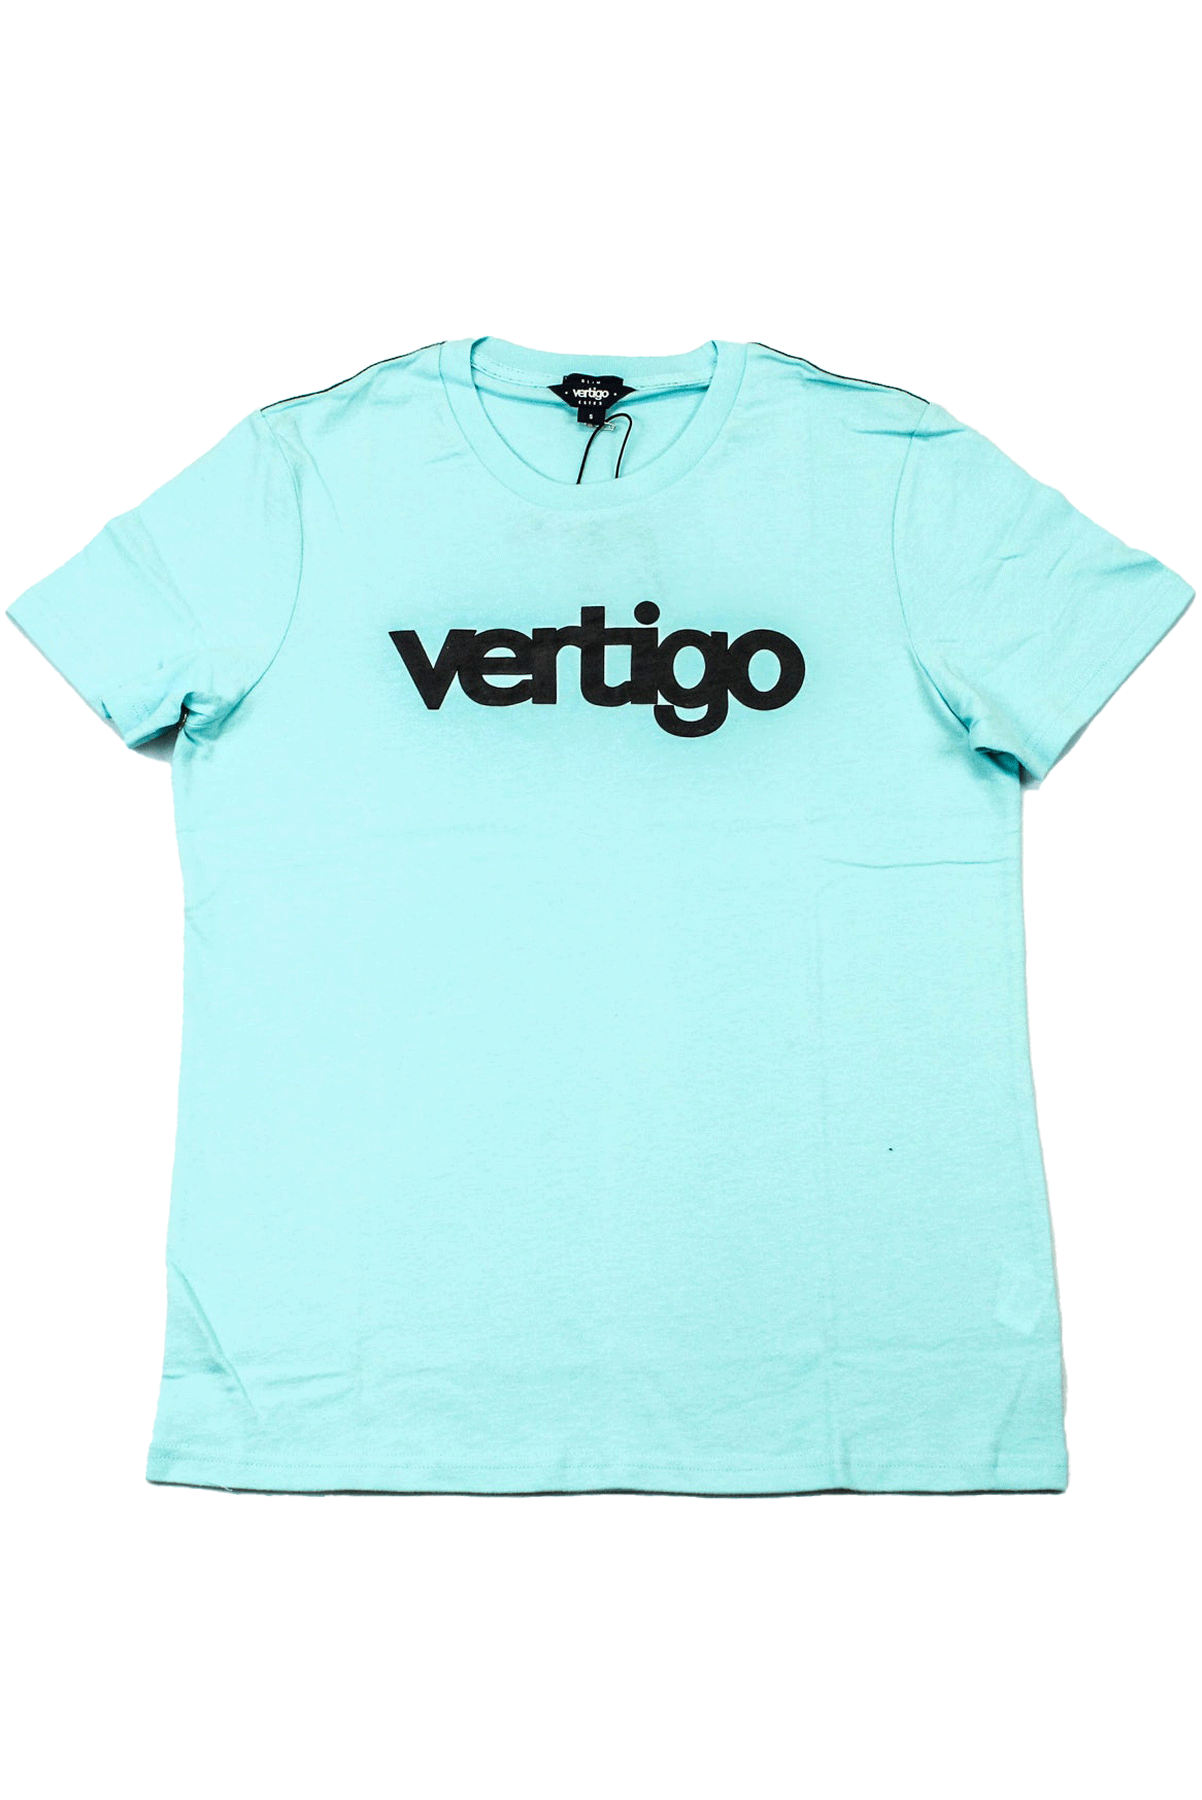 Vertigo Sky Blue T-shirt